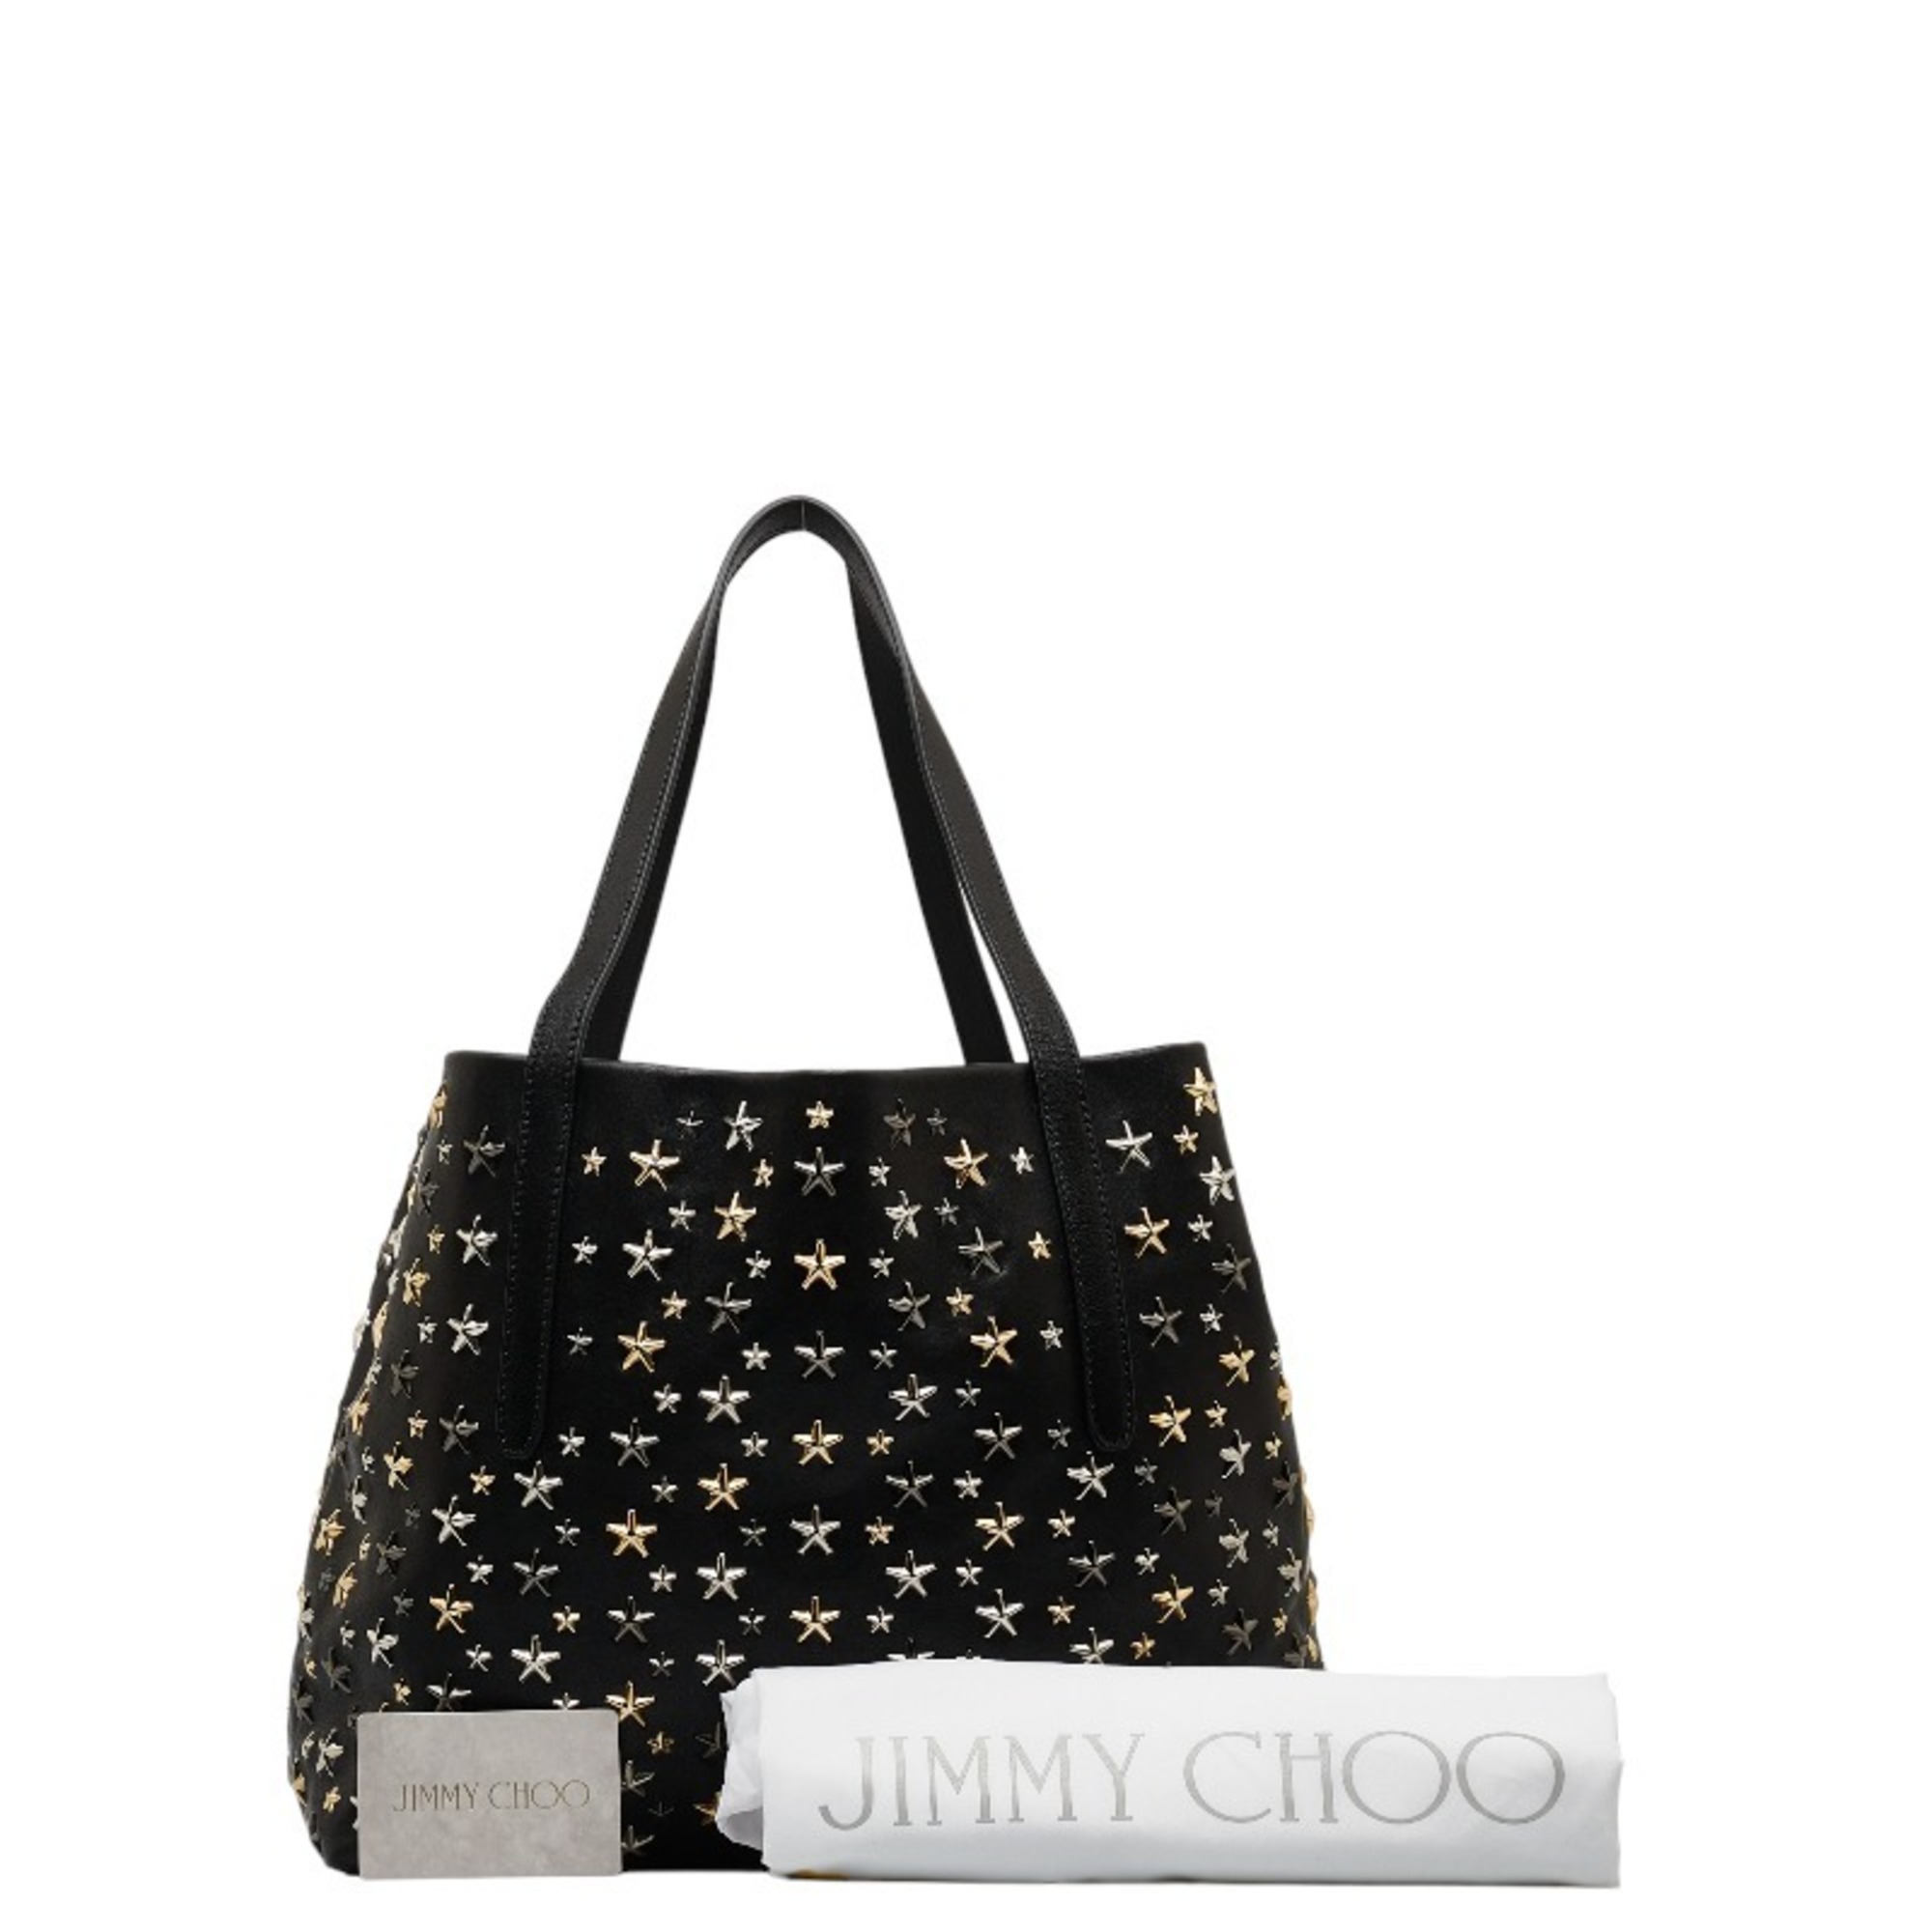 Jimmy Choo Sophia M Tote Star Studded Shoulder Bag Black Leather Ladies JIMMY CHOO